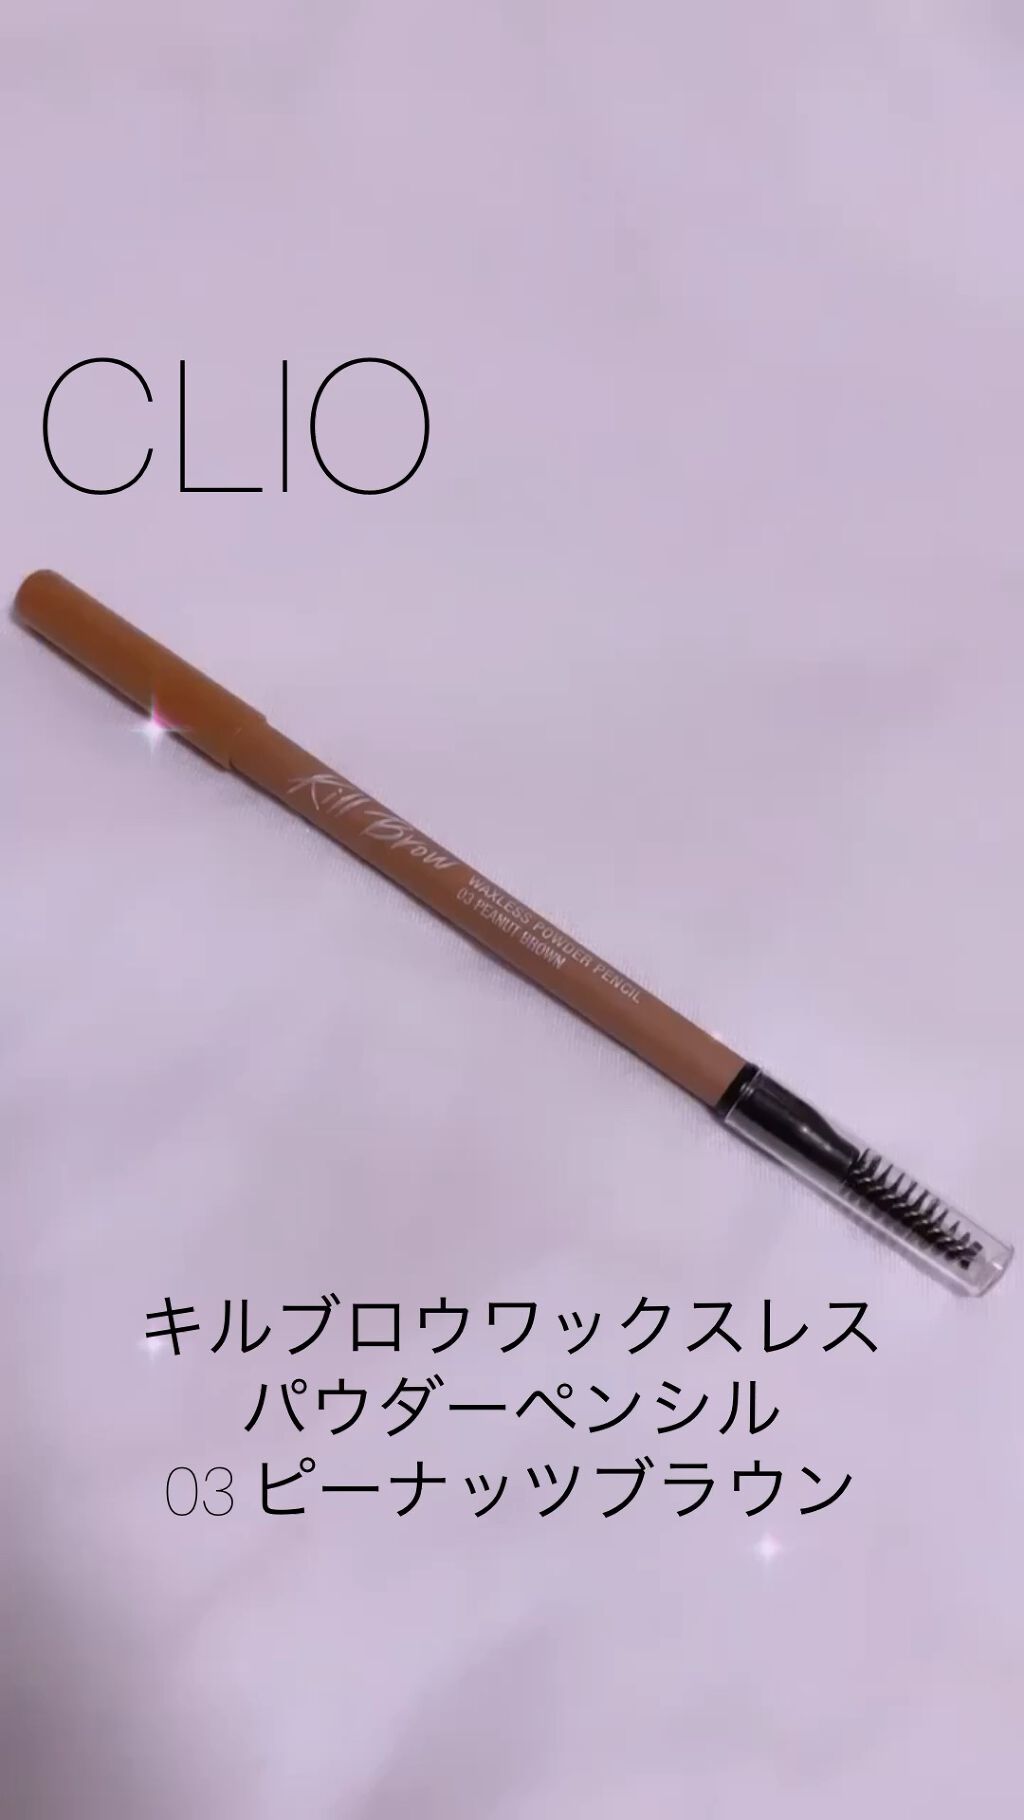 超激安特価 新品 CLIO キルブロウ ワックスレスパウダーペンシル アイブロウ 01